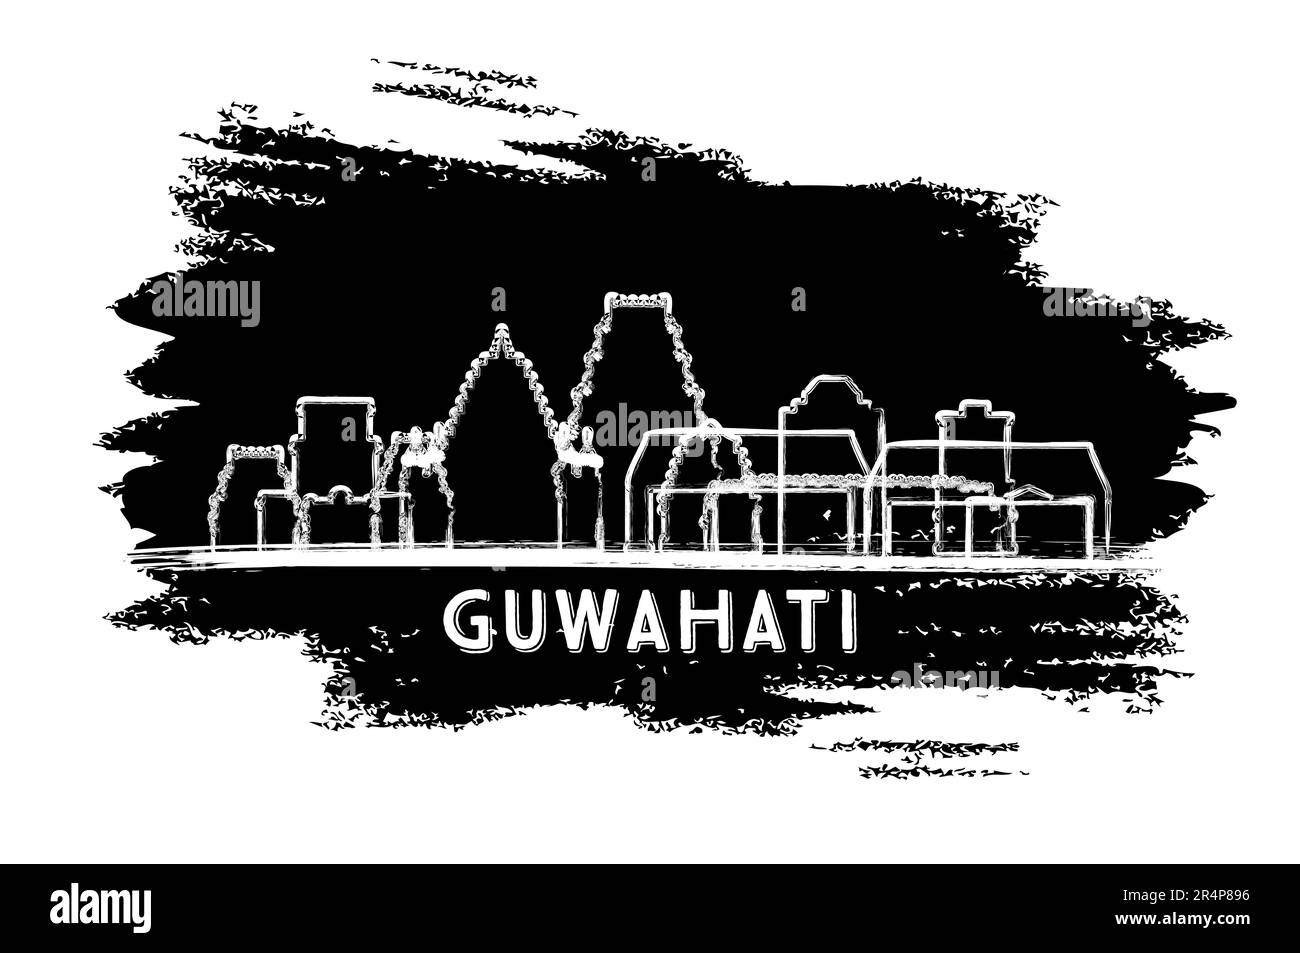 Silhouette Der Skyline Von Guwahati India. Handgezeichnete Skizze. Business Travel and Tourism Concept mit moderner Architektur. Vektordarstellung. Stock Vektor